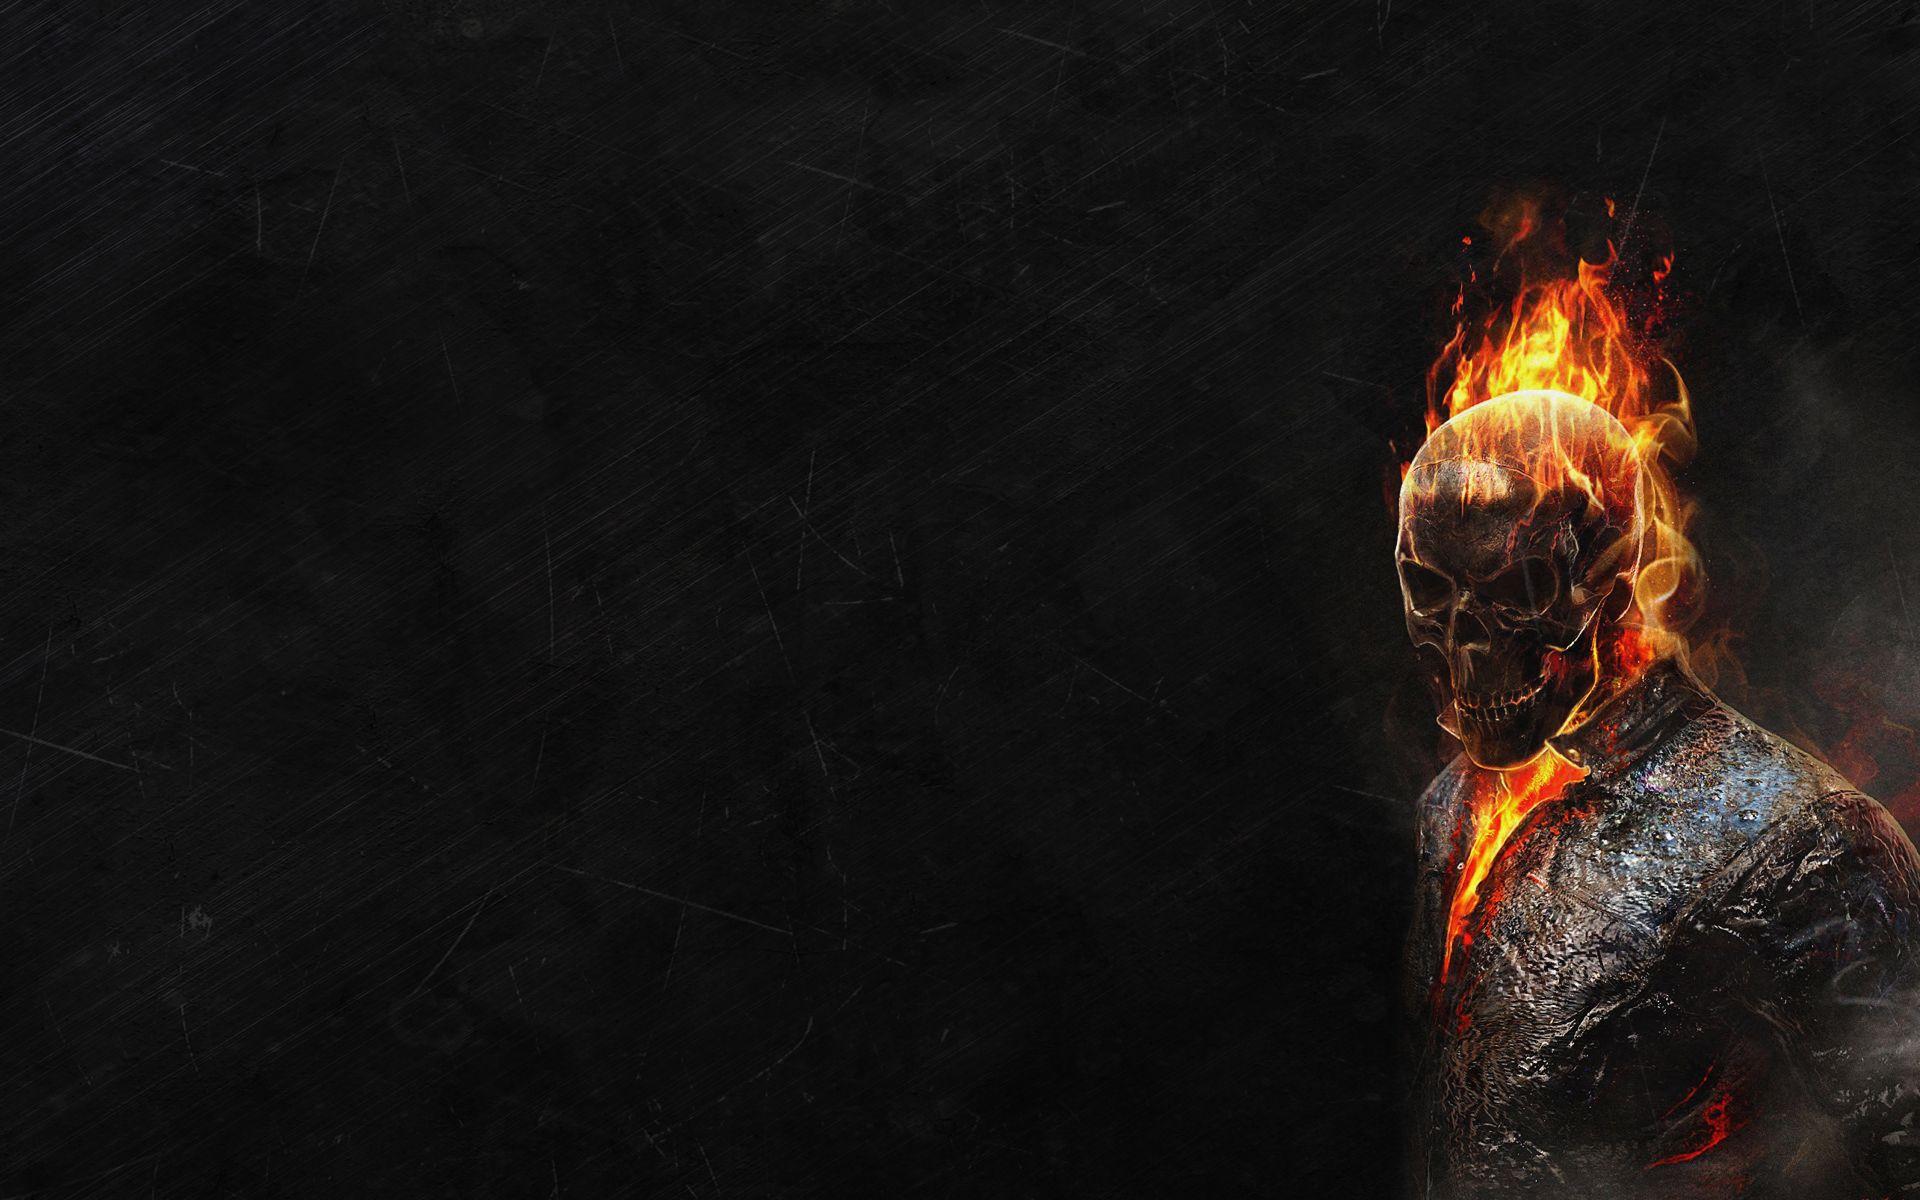 Imágenes de Ghost Rider en HD para descargar y compartir. Fotos o